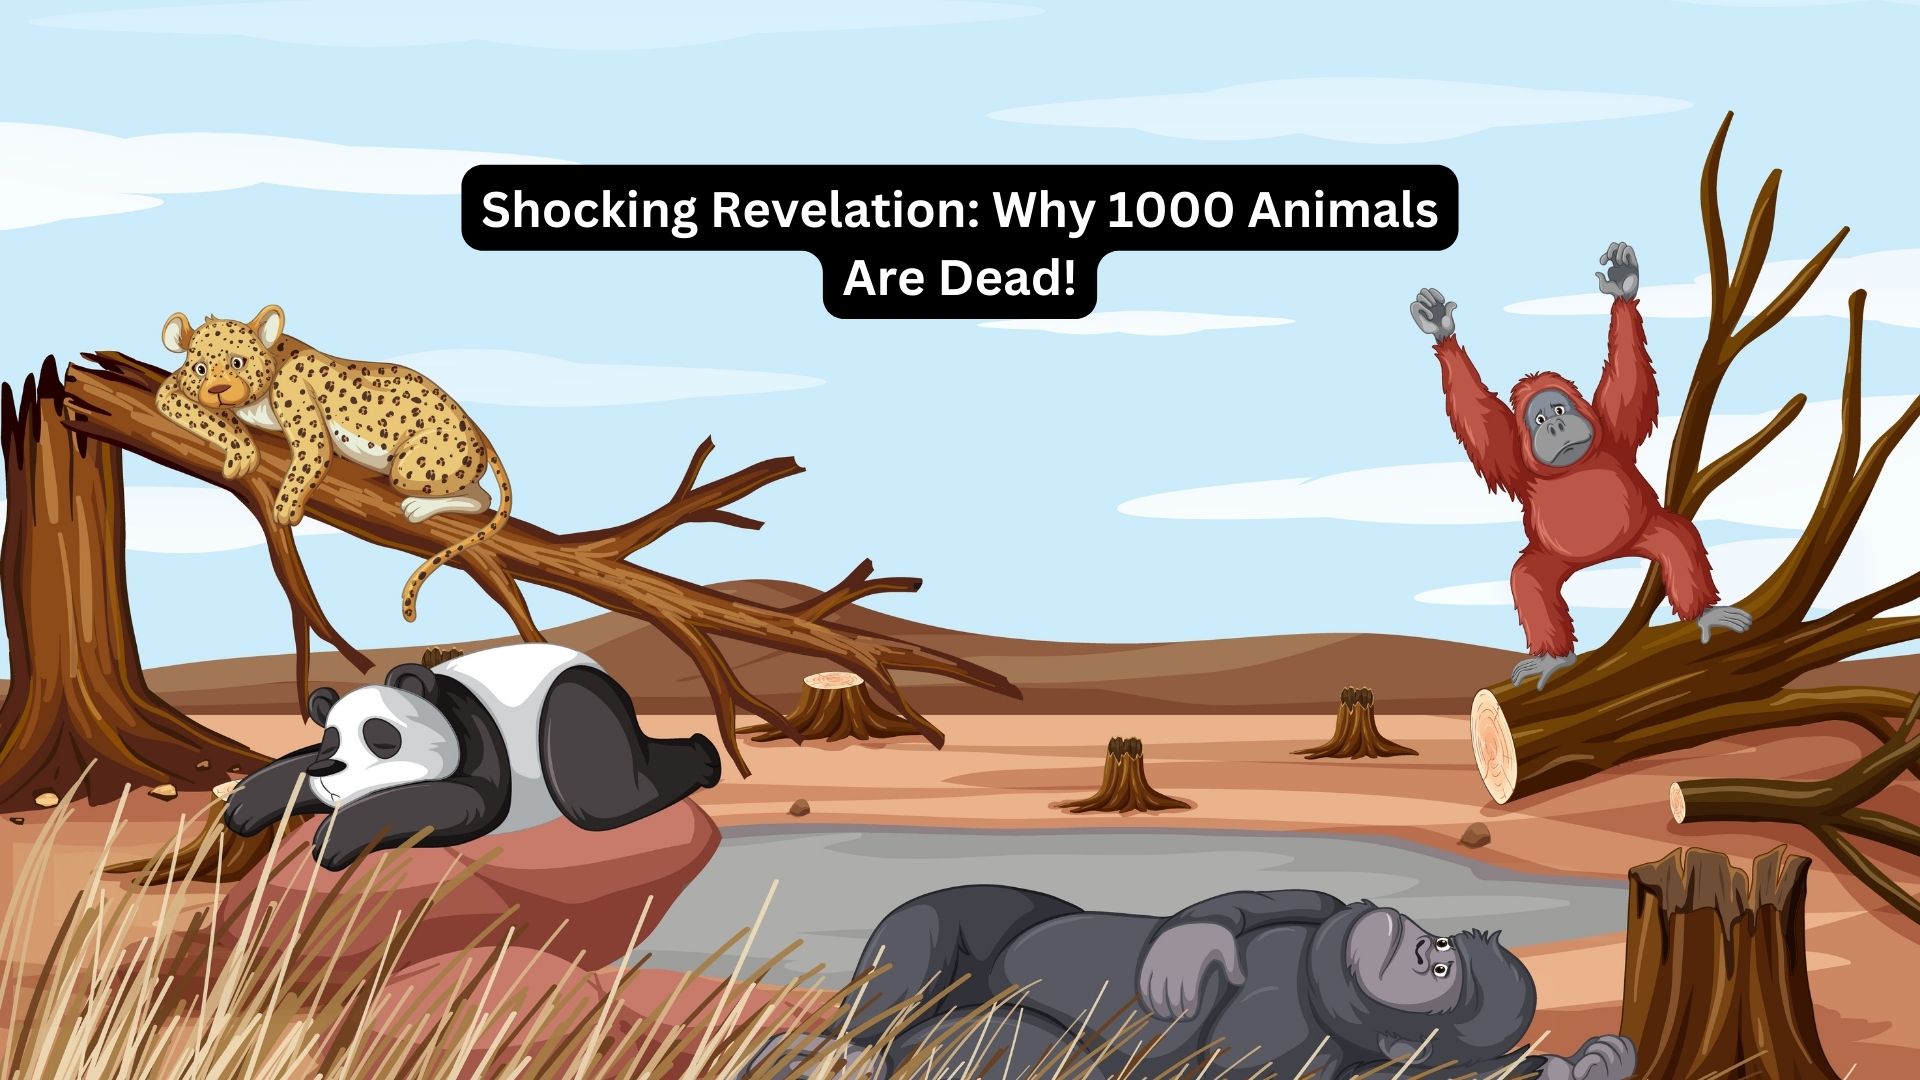 Shocking Revelation: 1000 Animal Deaths